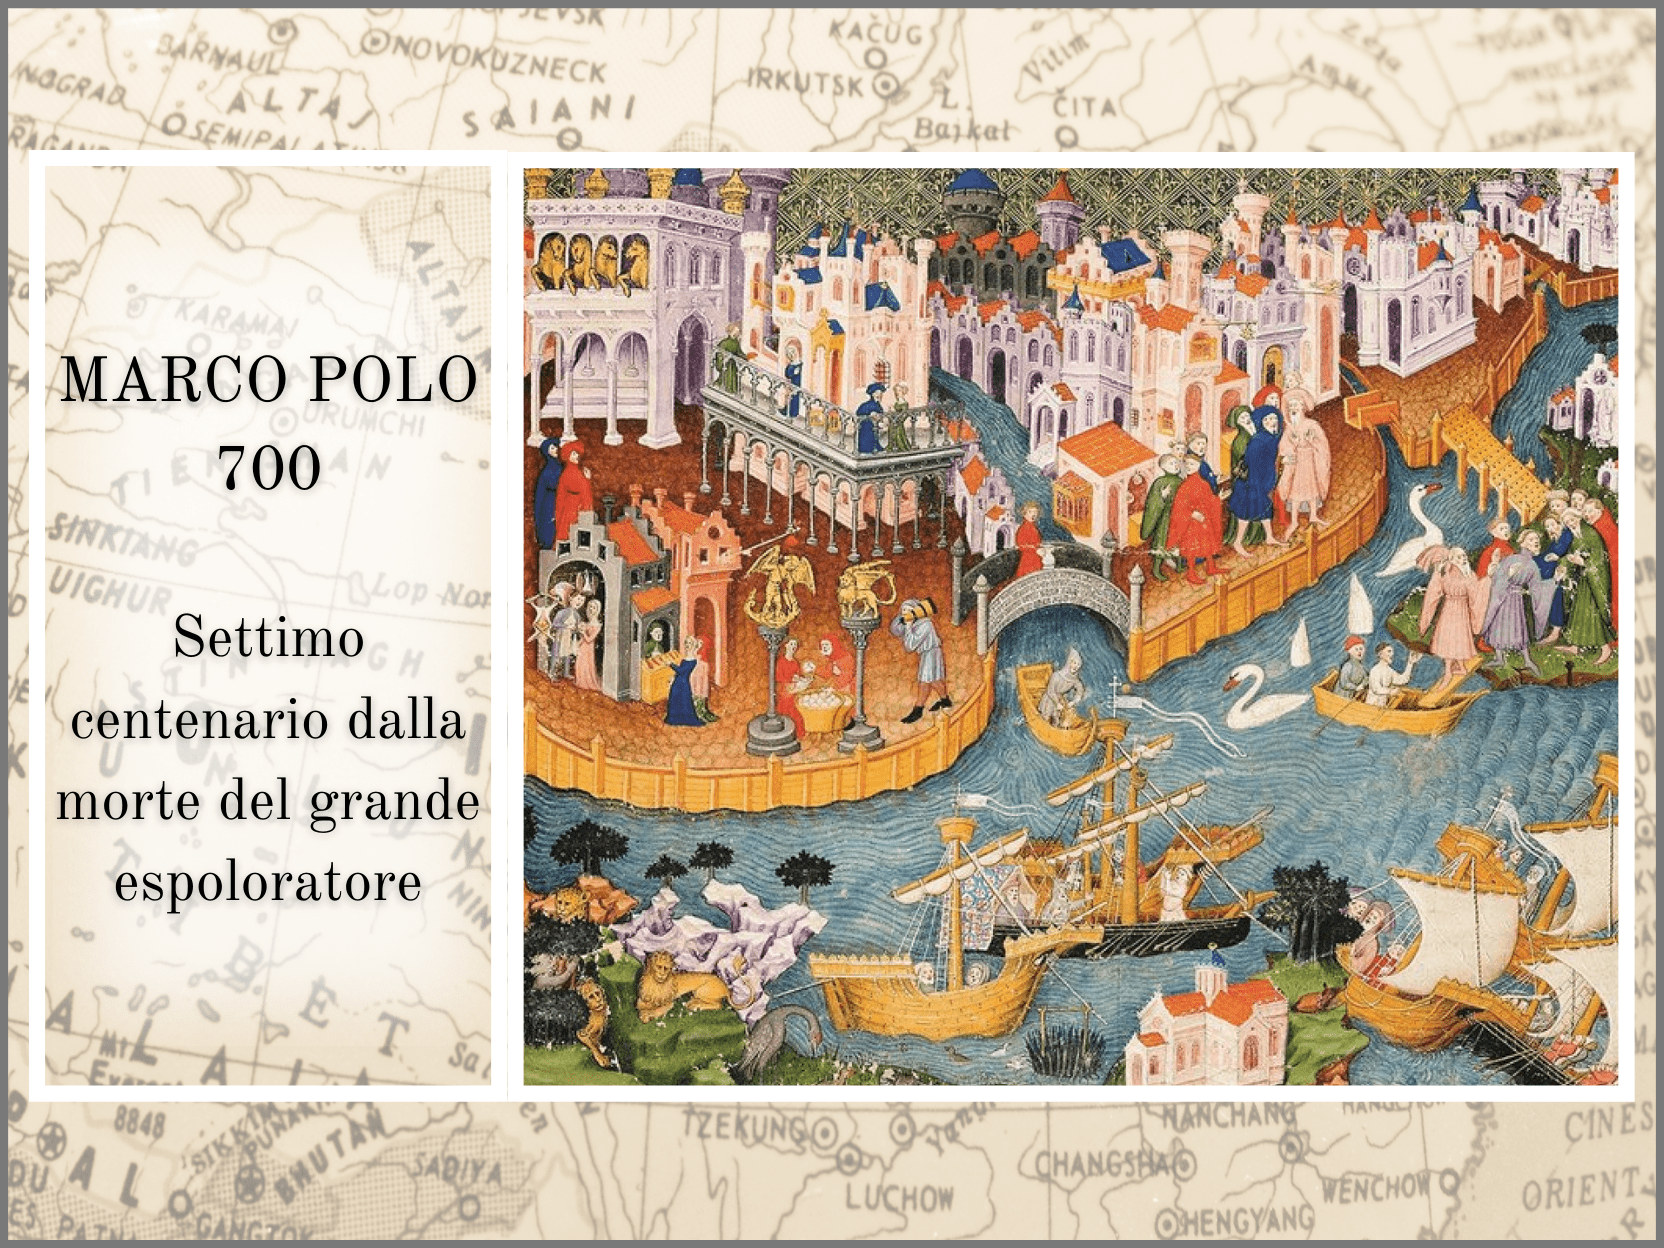 Celebrazioni settimo centenario Marco Polo avviano il dialogo Italia-Cina. Eventi, cultura e storia in onore dell'esploratore